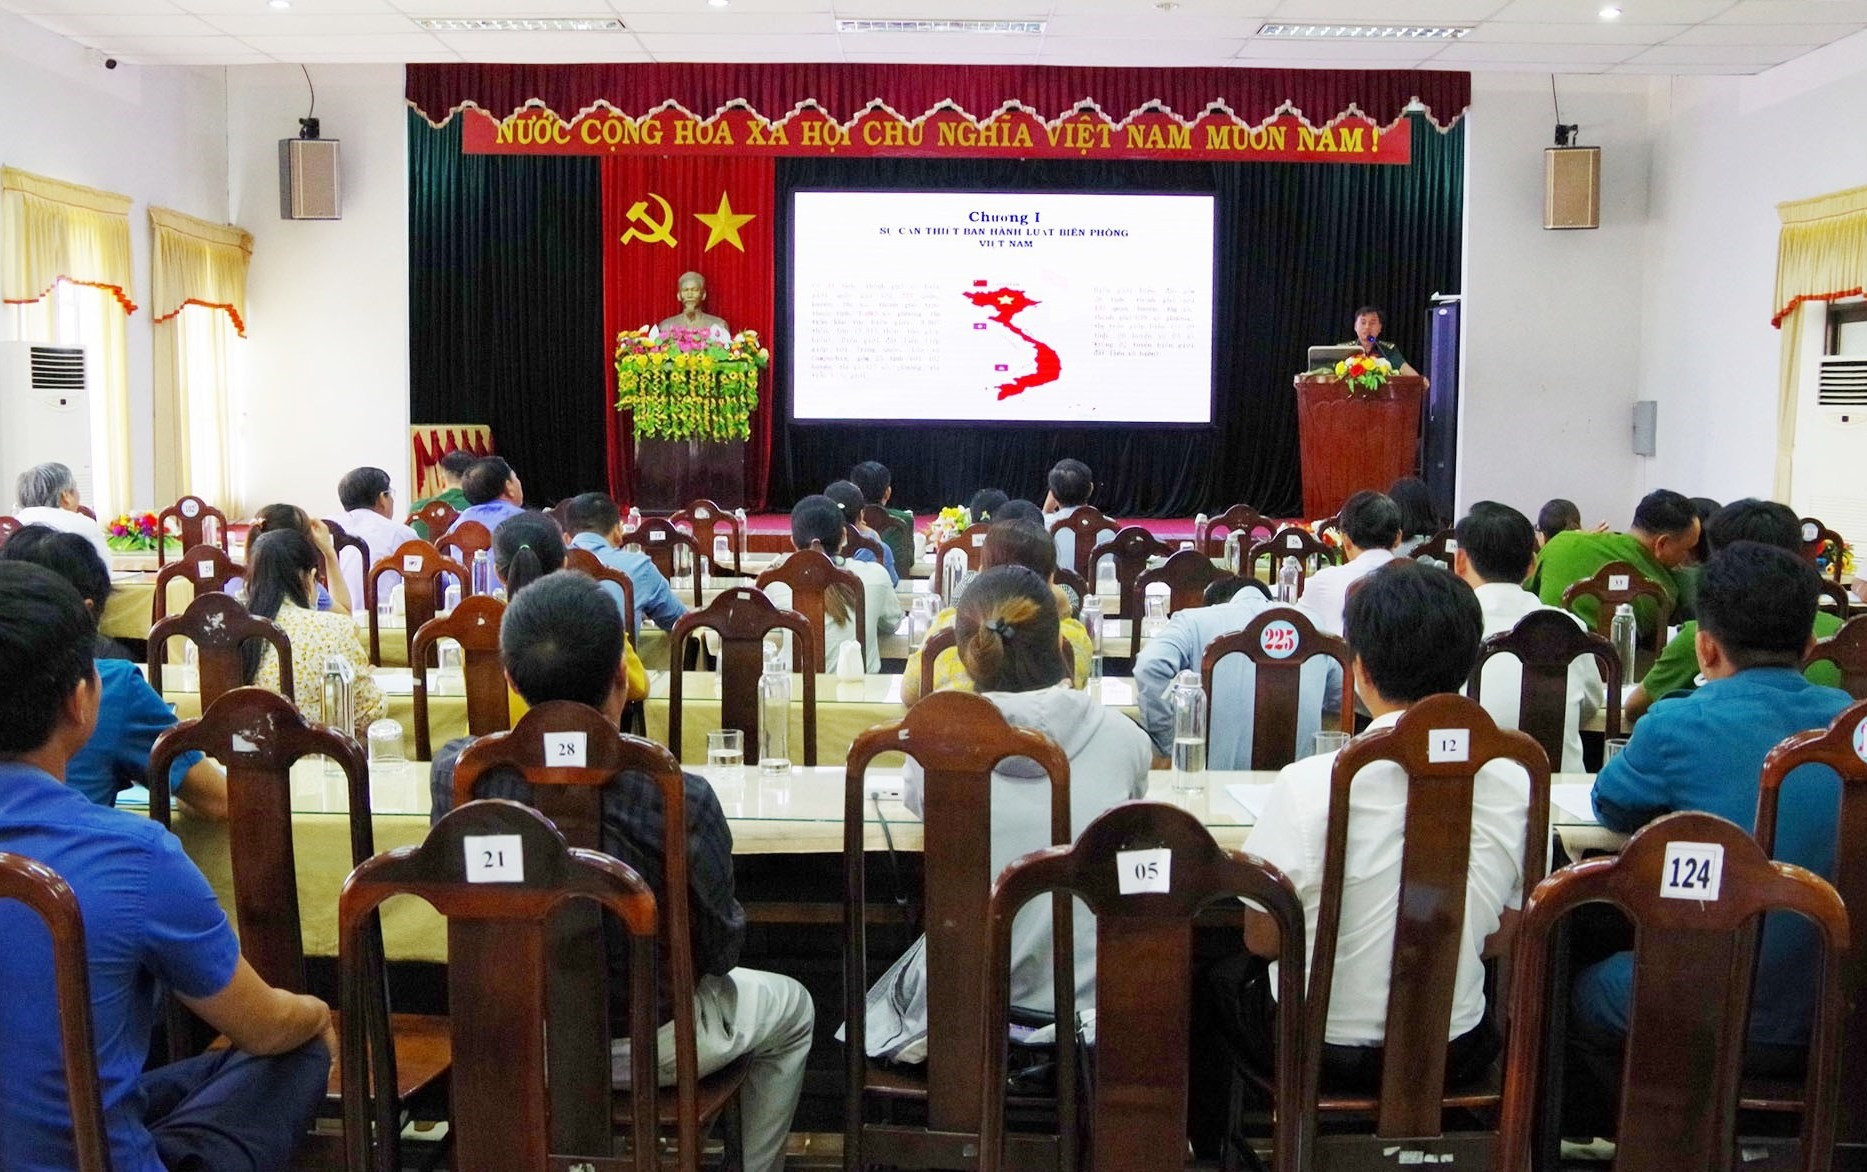 Báo cáo viên của BĐBP tỉnh giới thiệu Luật Biên phòng Việt Nam và các văn bản quy định chi tiết. Ảnh: HỒNG ANH